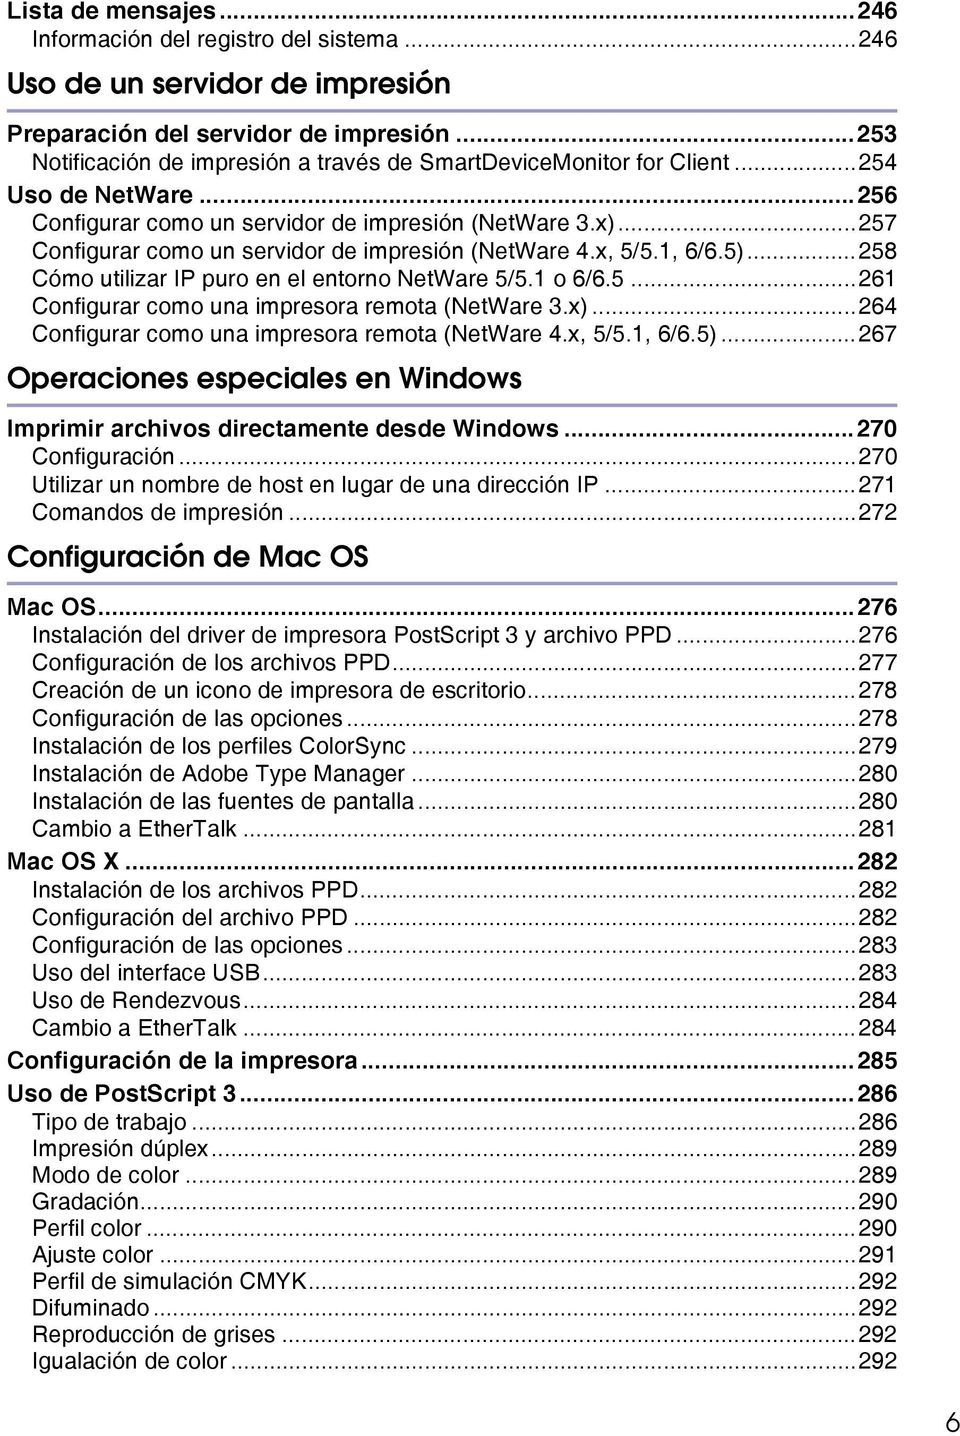 ..257 Configurar como un servidor de impresión (NetWare 4.x, 5/5.1, 6/6.5)...258 Cómo utilizar IP puro en el entorno NetWare 5/5.1 o 6/6.5...261 Configurar como una impresora remota (NetWare 3.x).